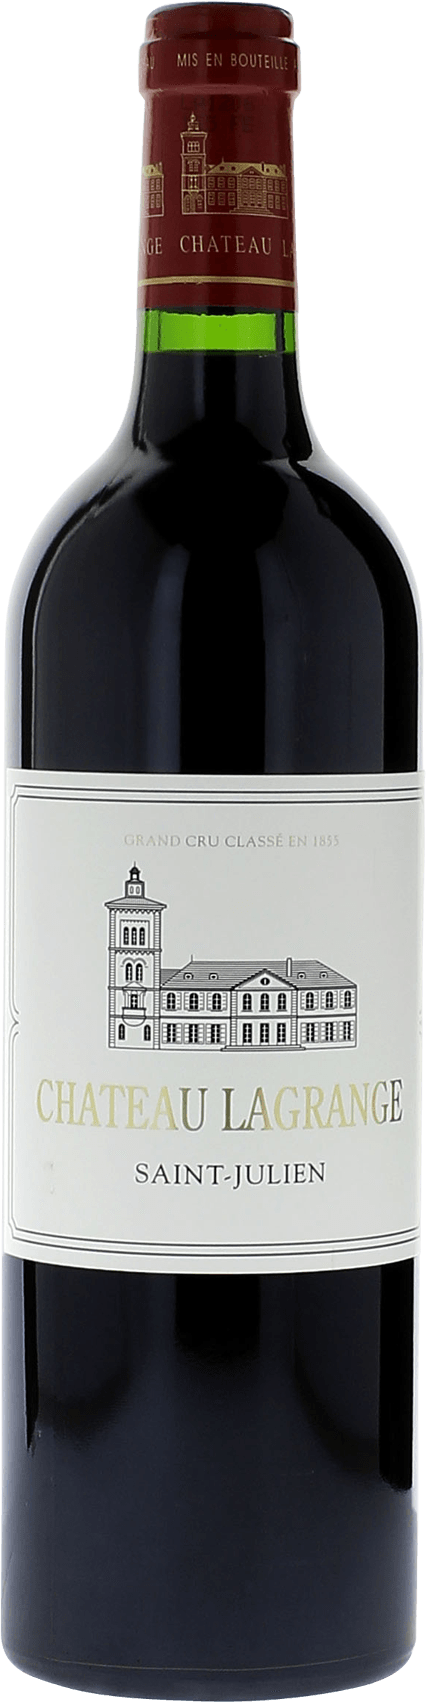 Lagrange (salmanazar 9 litres) 2012 3me Grand cru class Saint-Julien, Bordeaux rouge